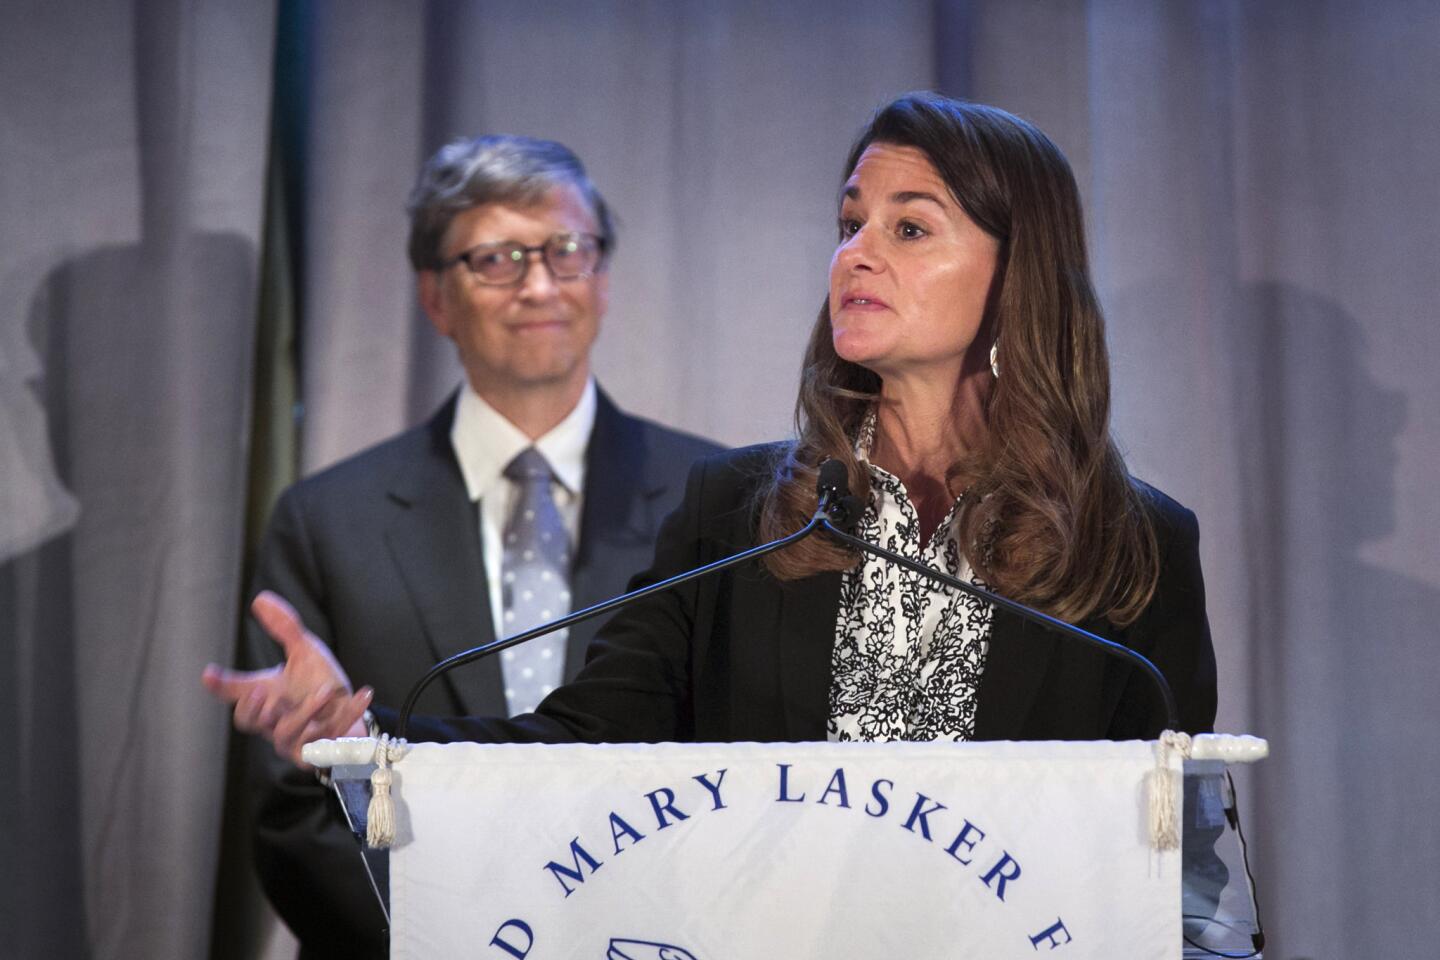 3) Co-founder of Gates Foundation Melinda Gates